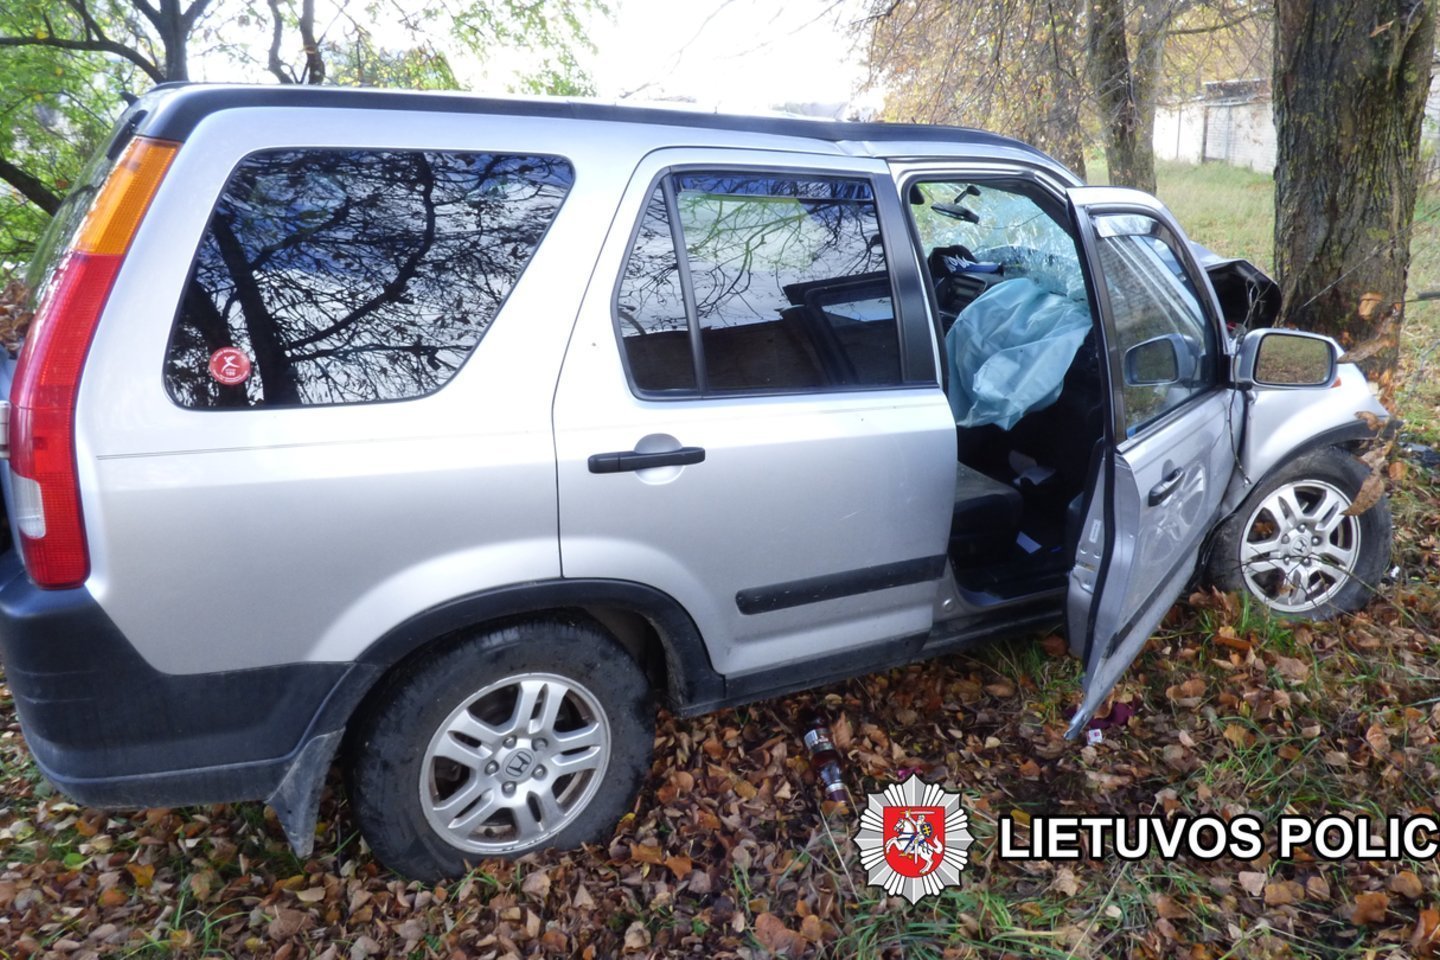  „Honda“ Ukmergėje trenkėsi į medį – žuvo V.Ušacko motina, girtas brolis nuvežtas į ligoninę.<br> Vilniaus apskrities VPK nuotr.